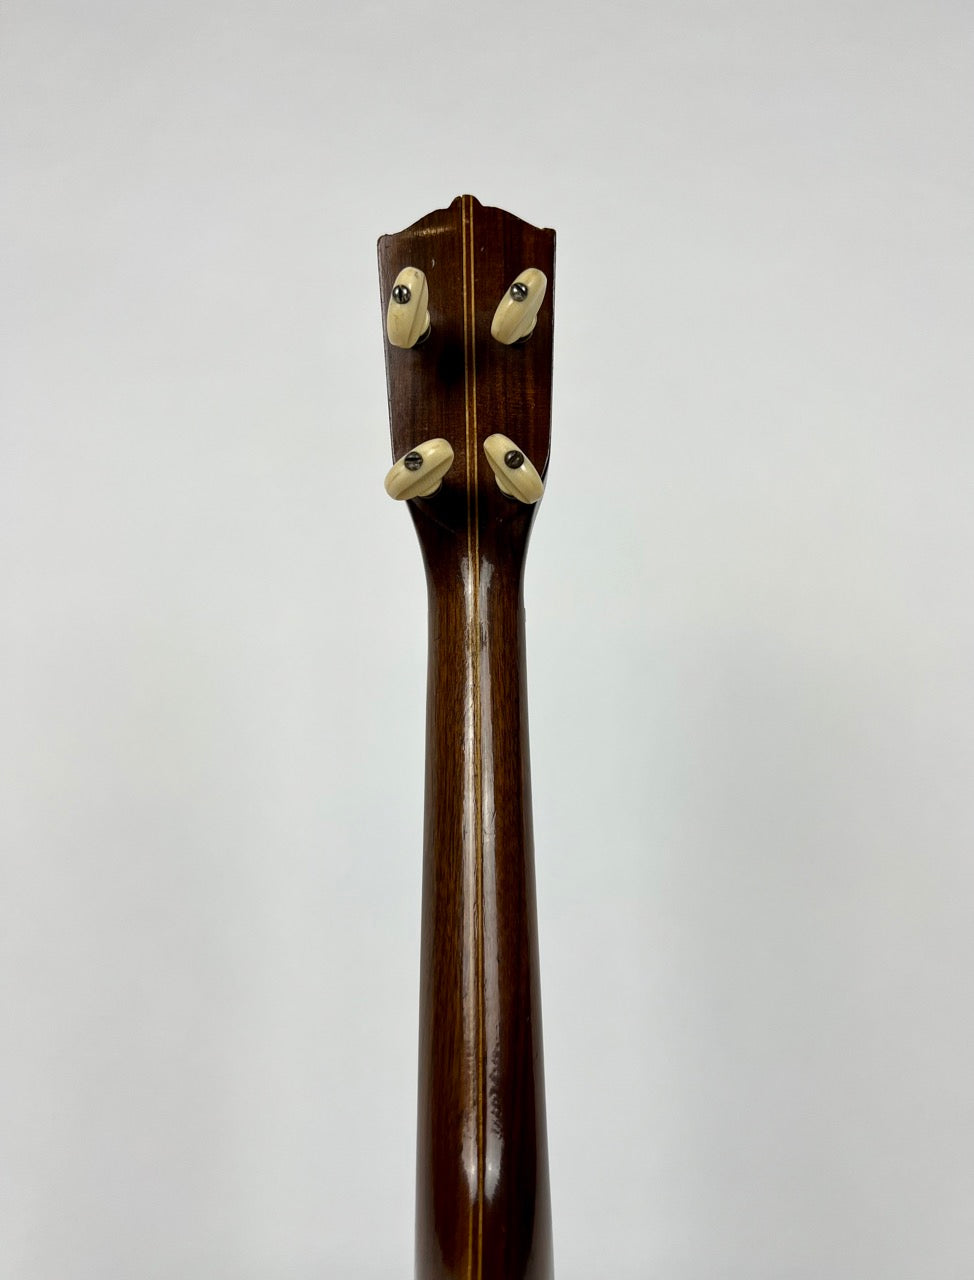 1920s Stromberg-Voisinet Resonator Banjo Ukulele Banjolele